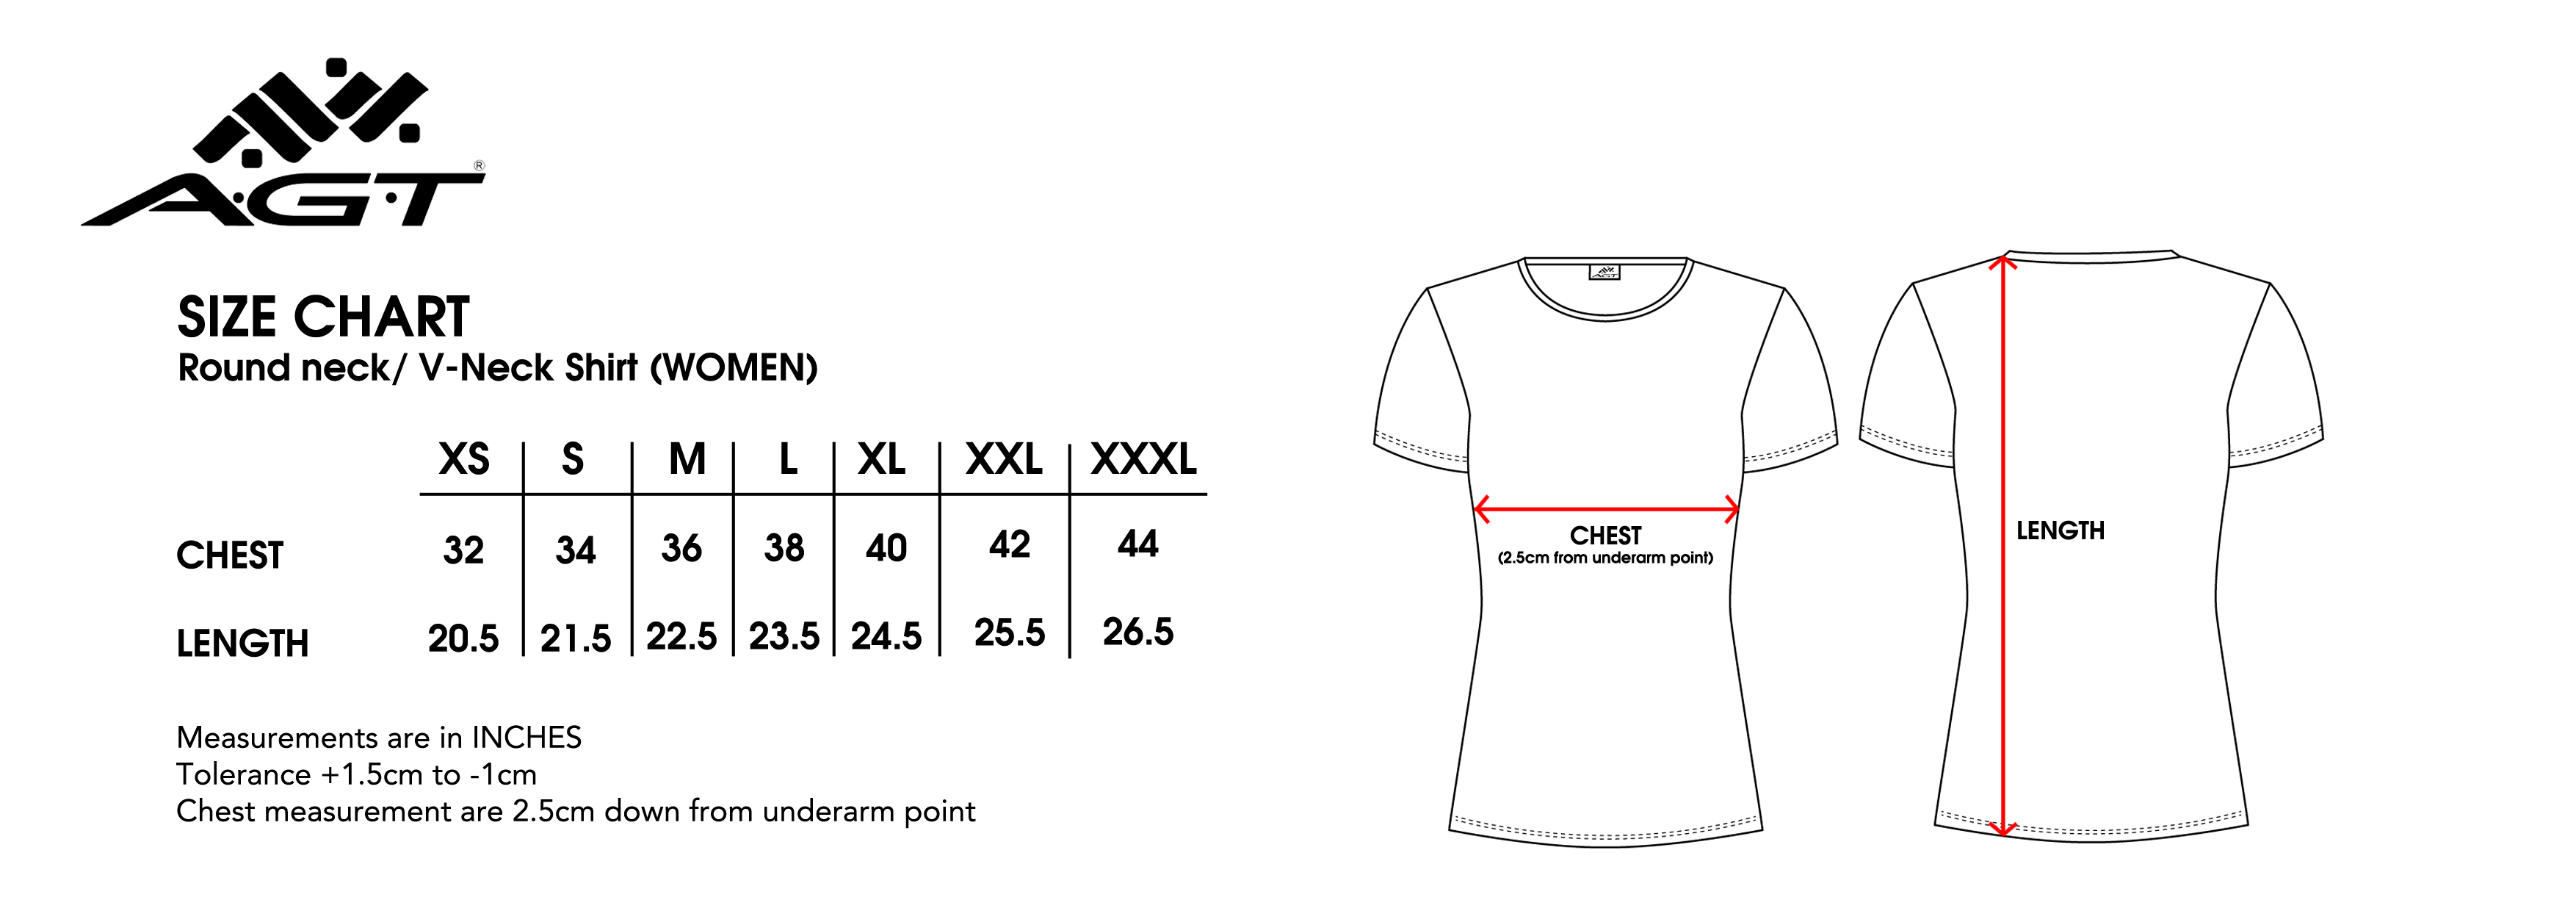 adidas womens shirt size chart